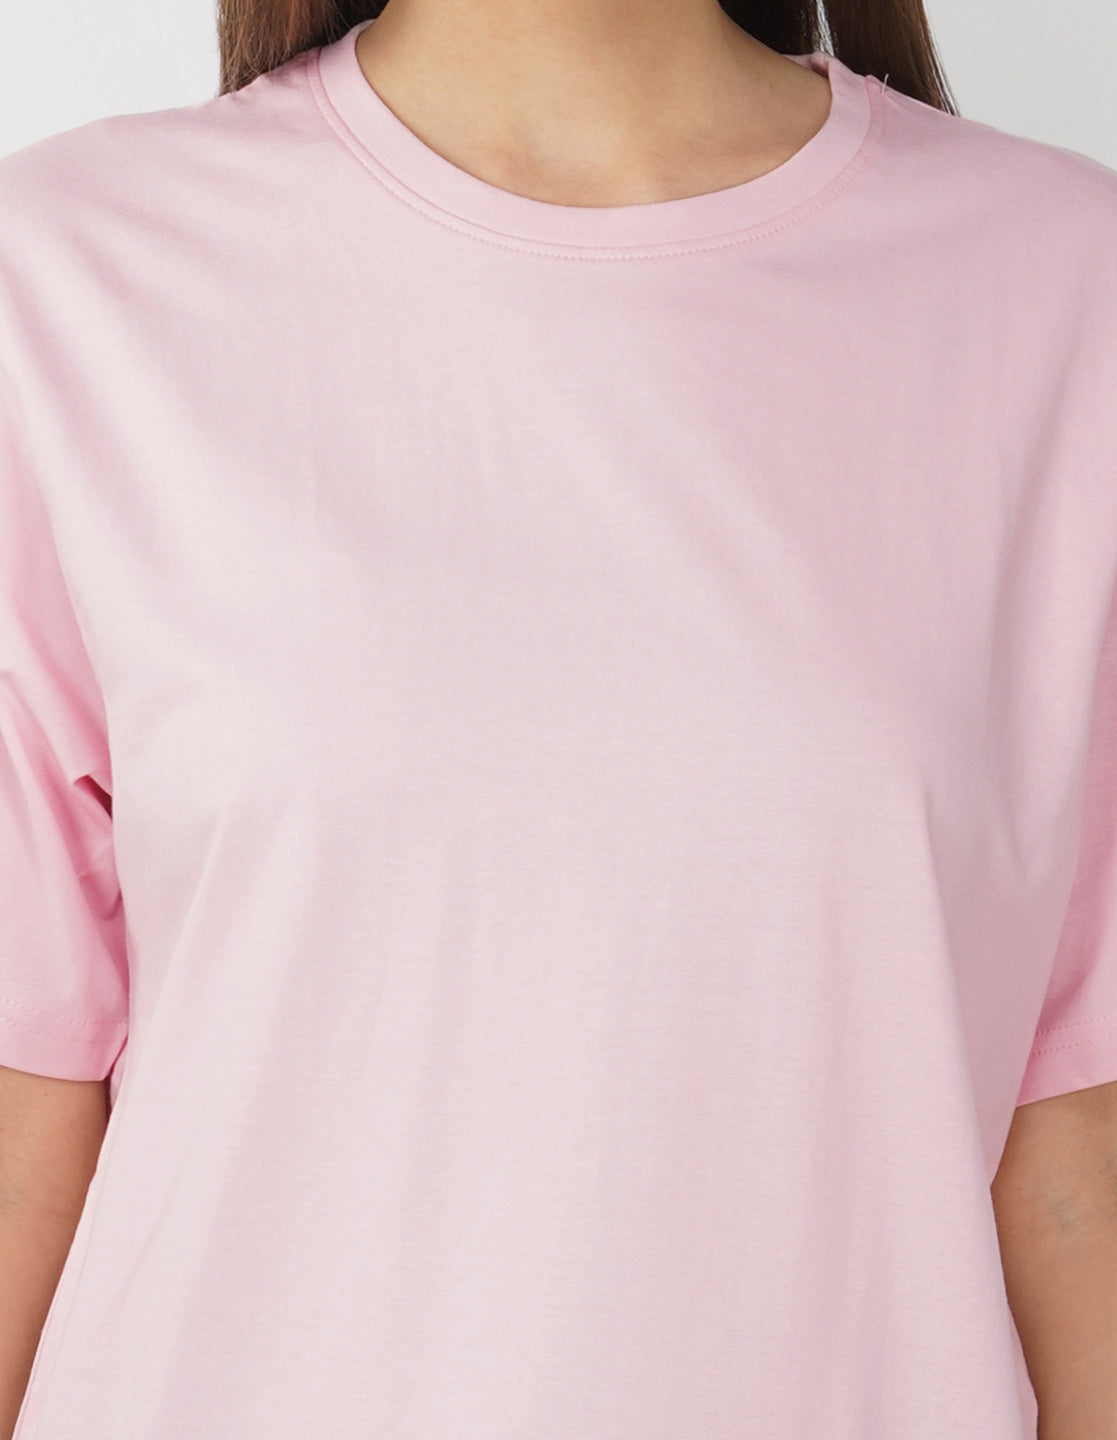 Nusyl Women Light Pink Flower print oversized t-shirt